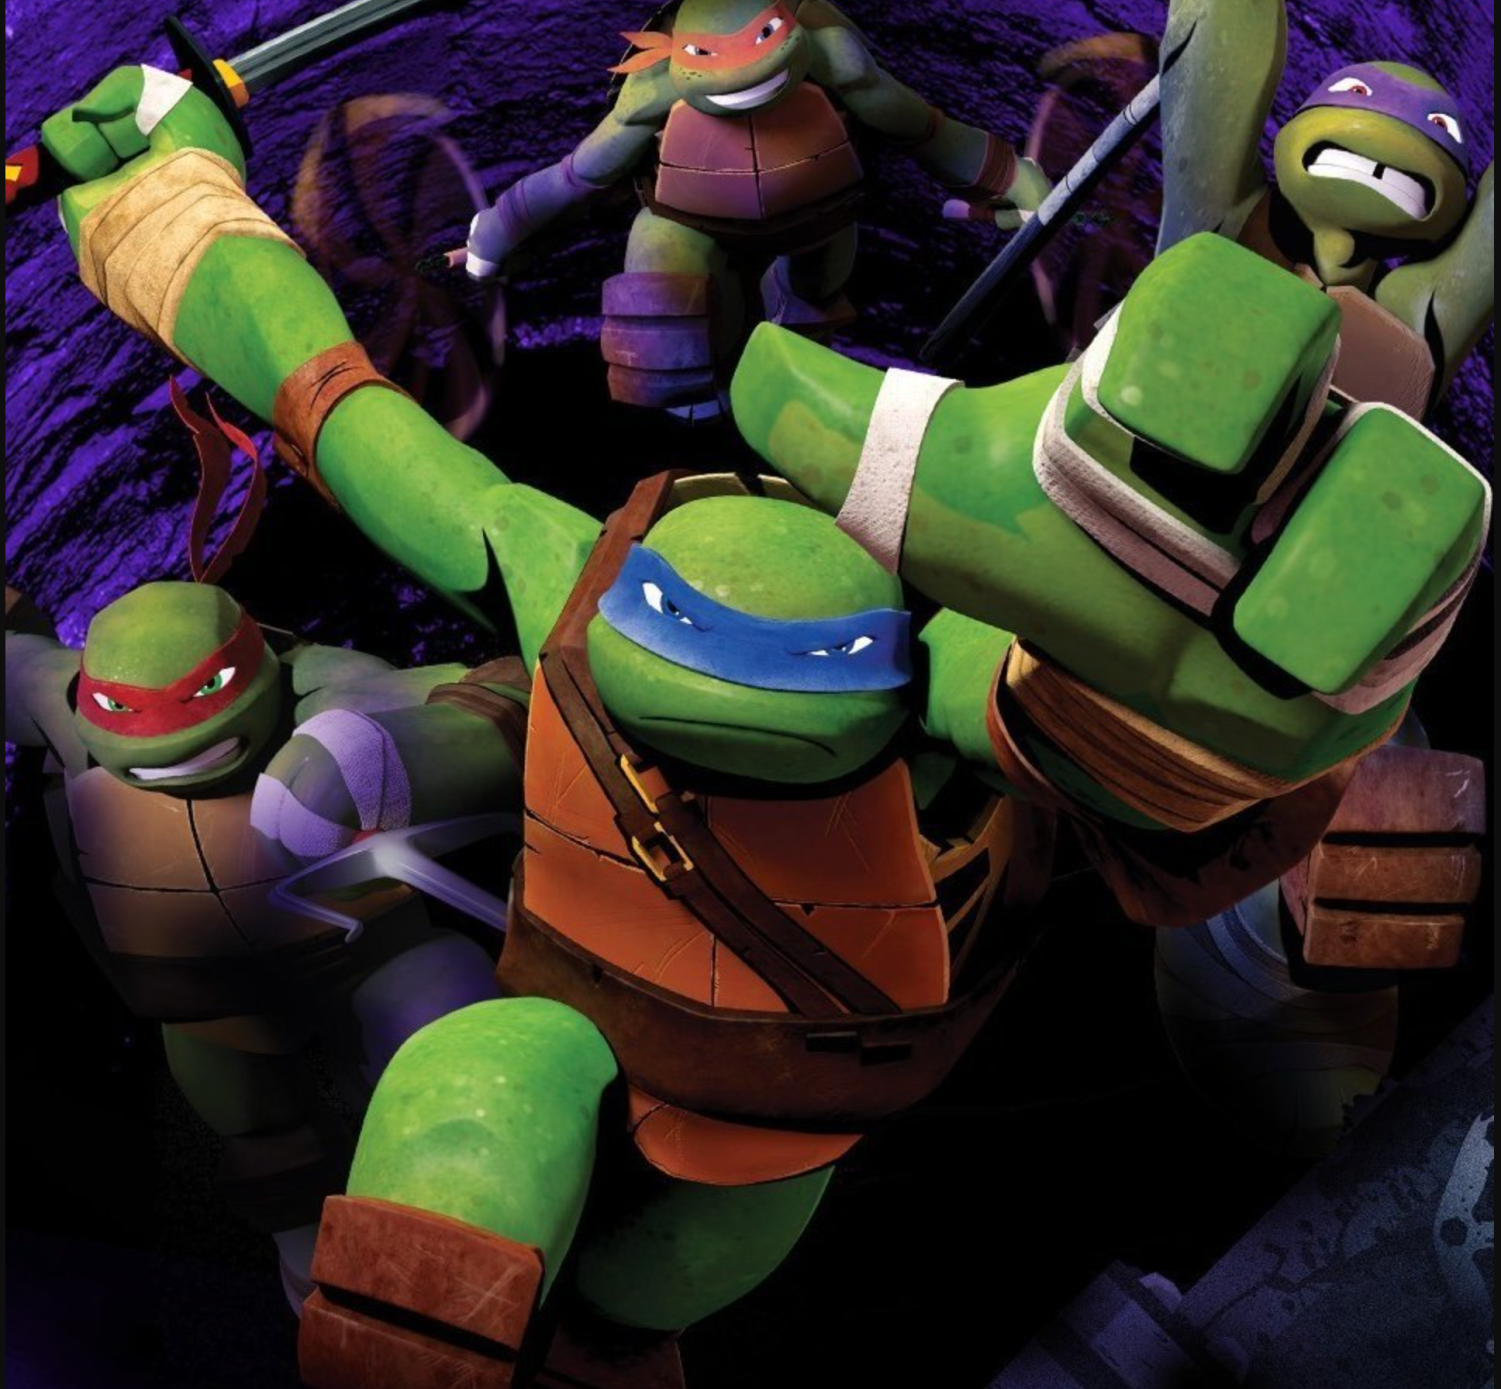 Teenage Mutant Ninja Turtle 2012 Seasons Ranked Worst To Best 